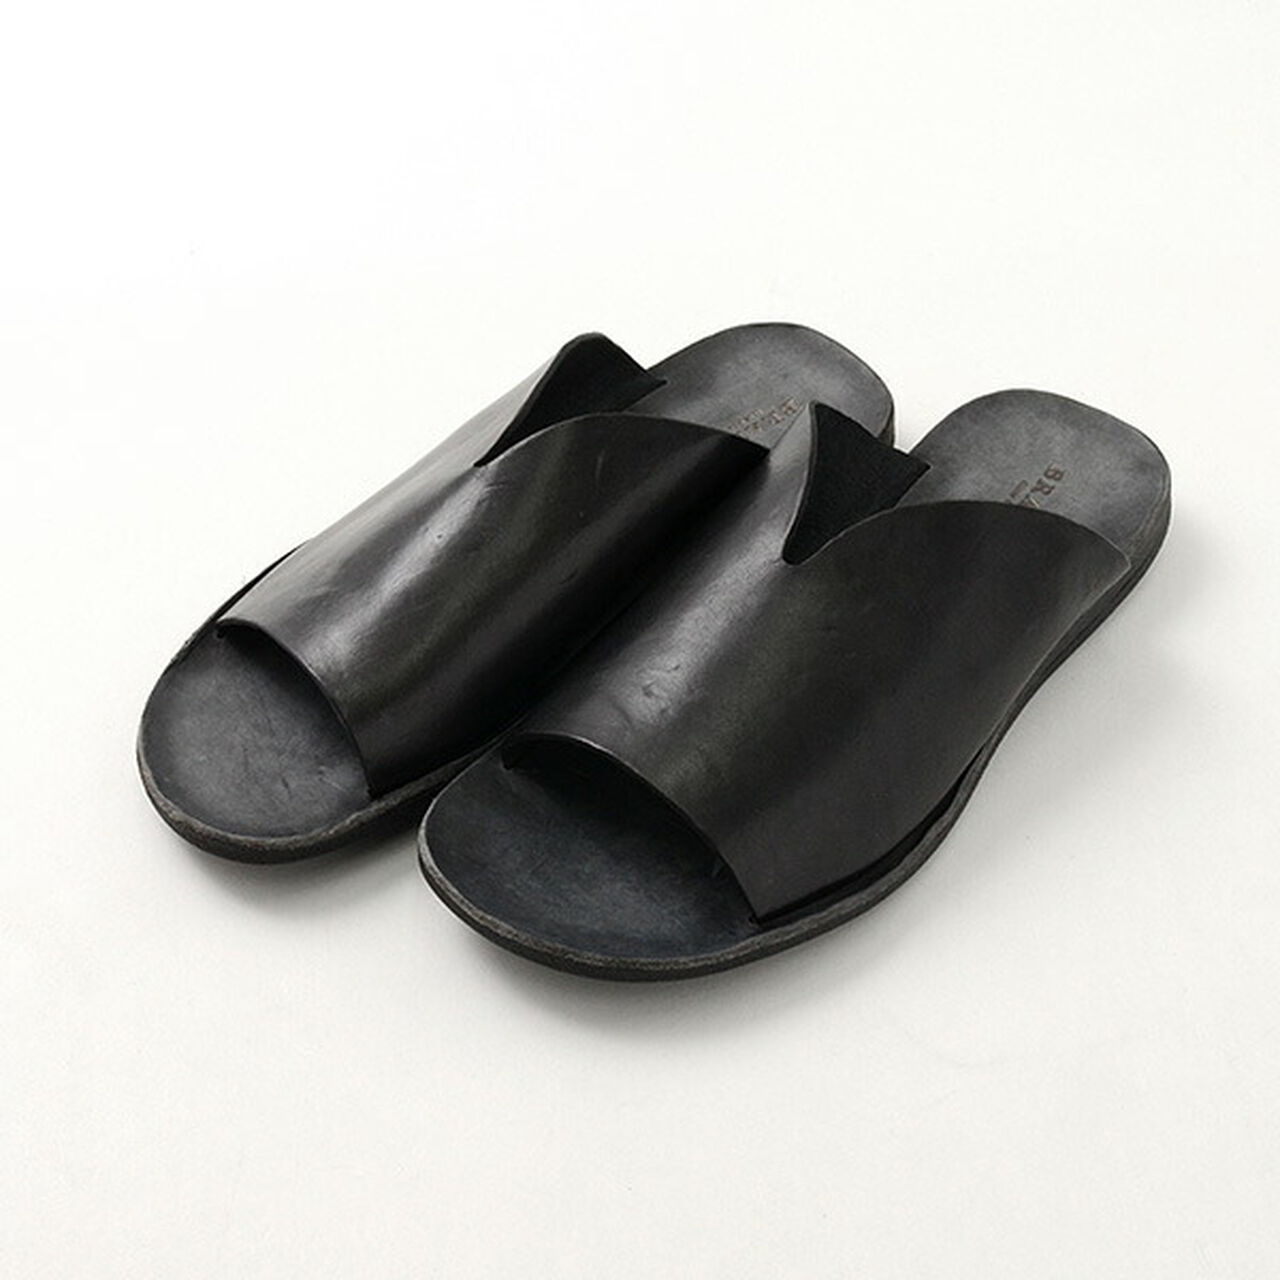 Leather Sandals,Black, large image number 0